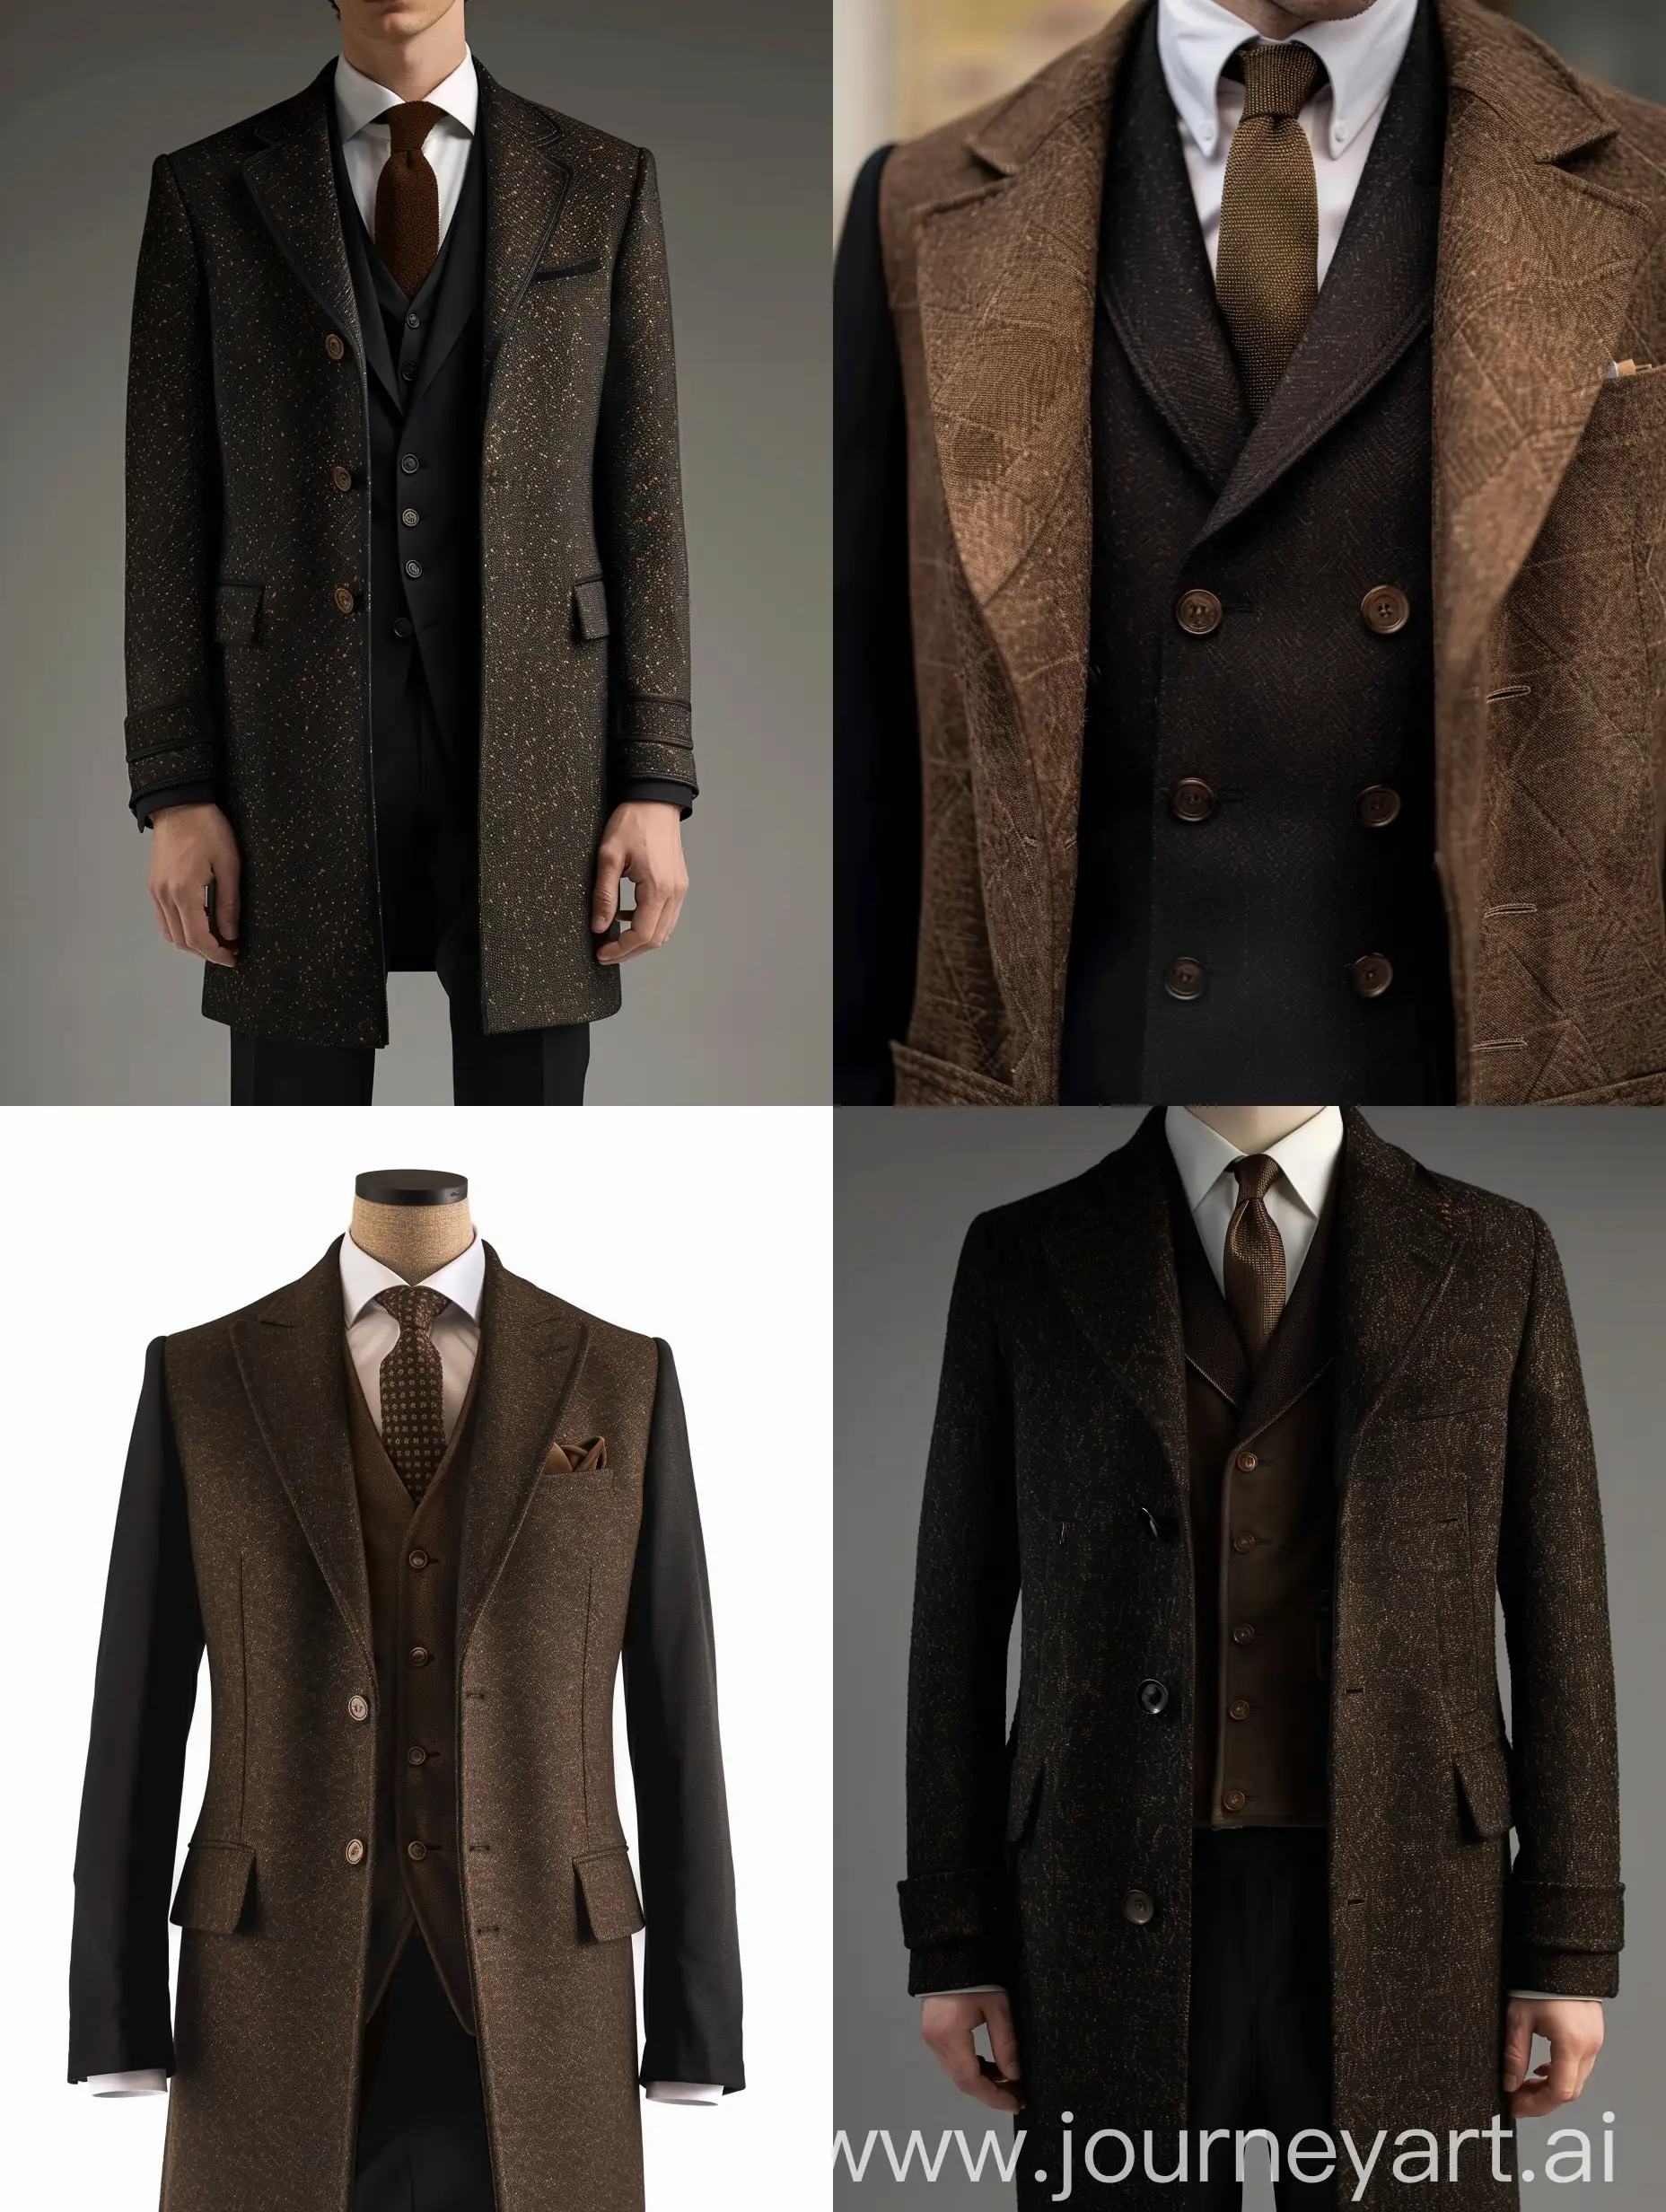 A black suit, brown tie. brown Alcantara overcoat